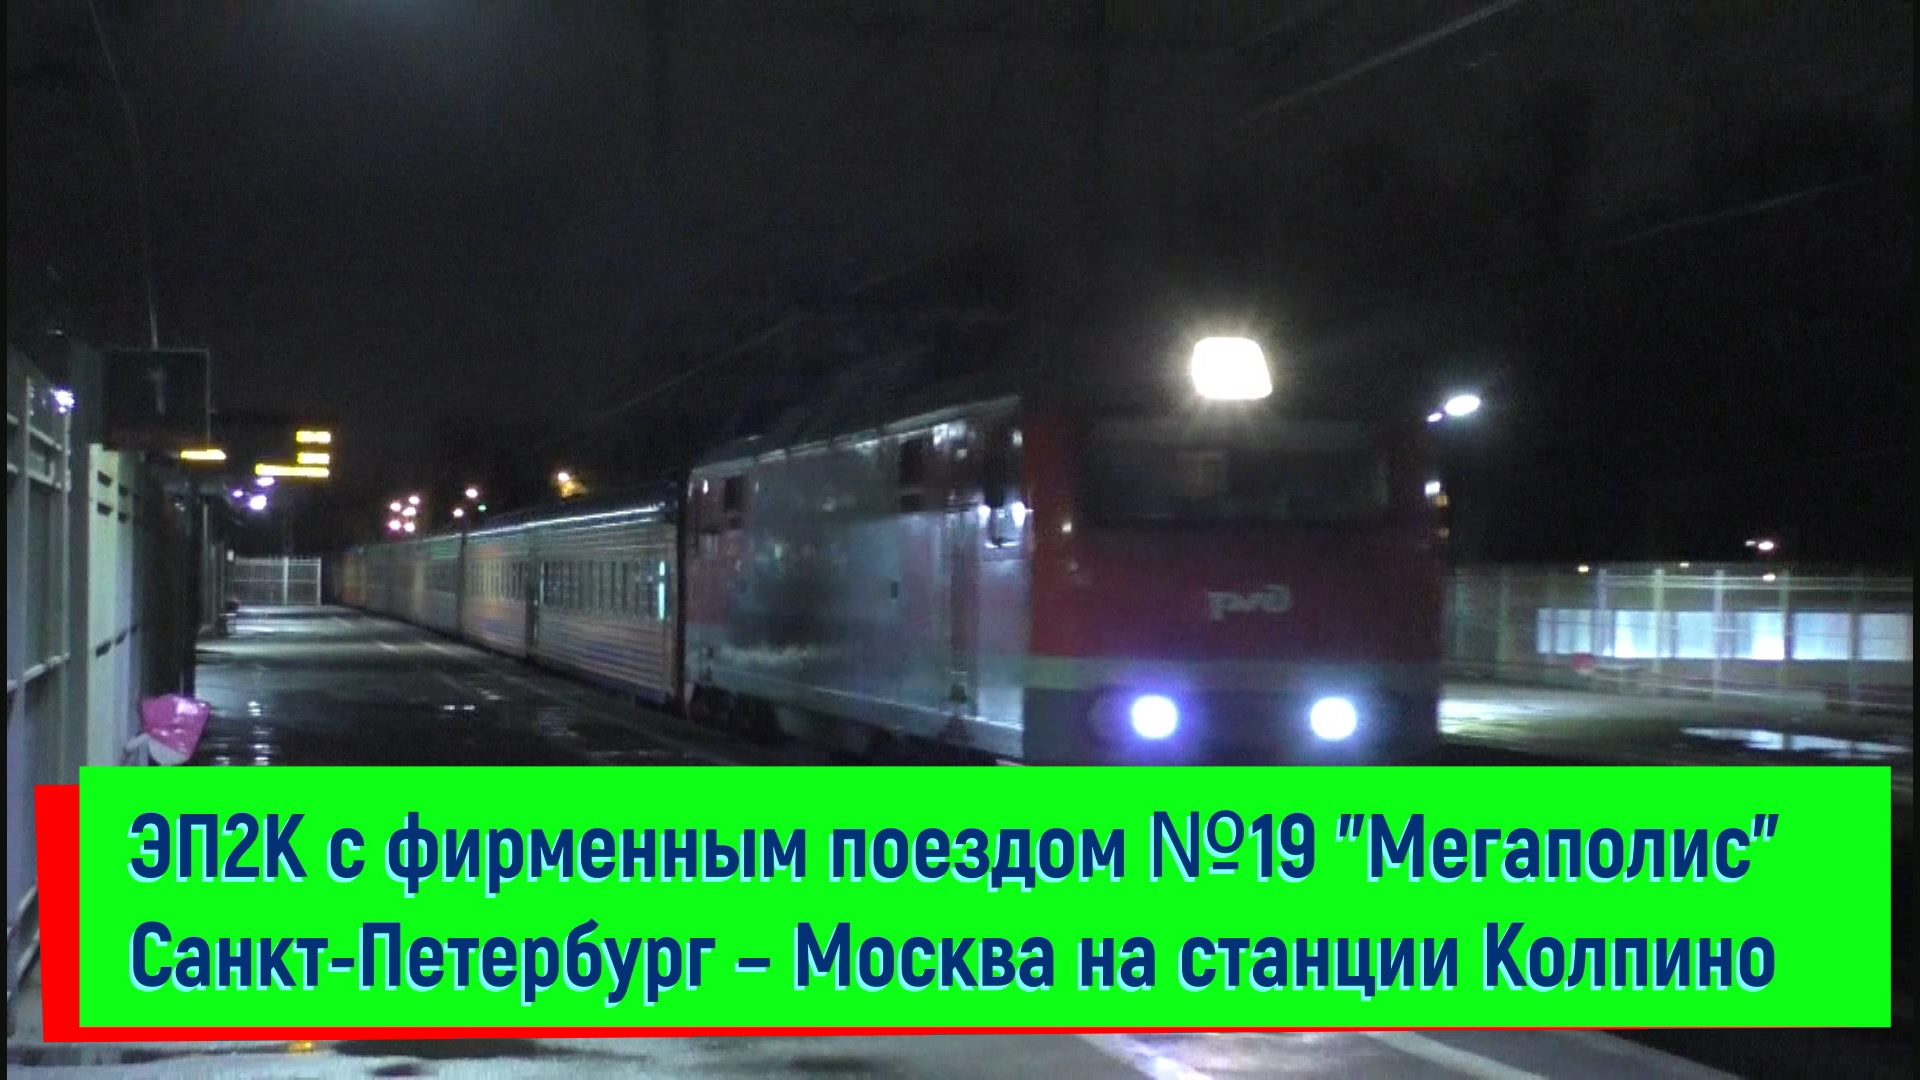 ЭП2К с поездом №019 "Мегаполис" Санкт-Петербург – Москва на станции Колпино | EP2K